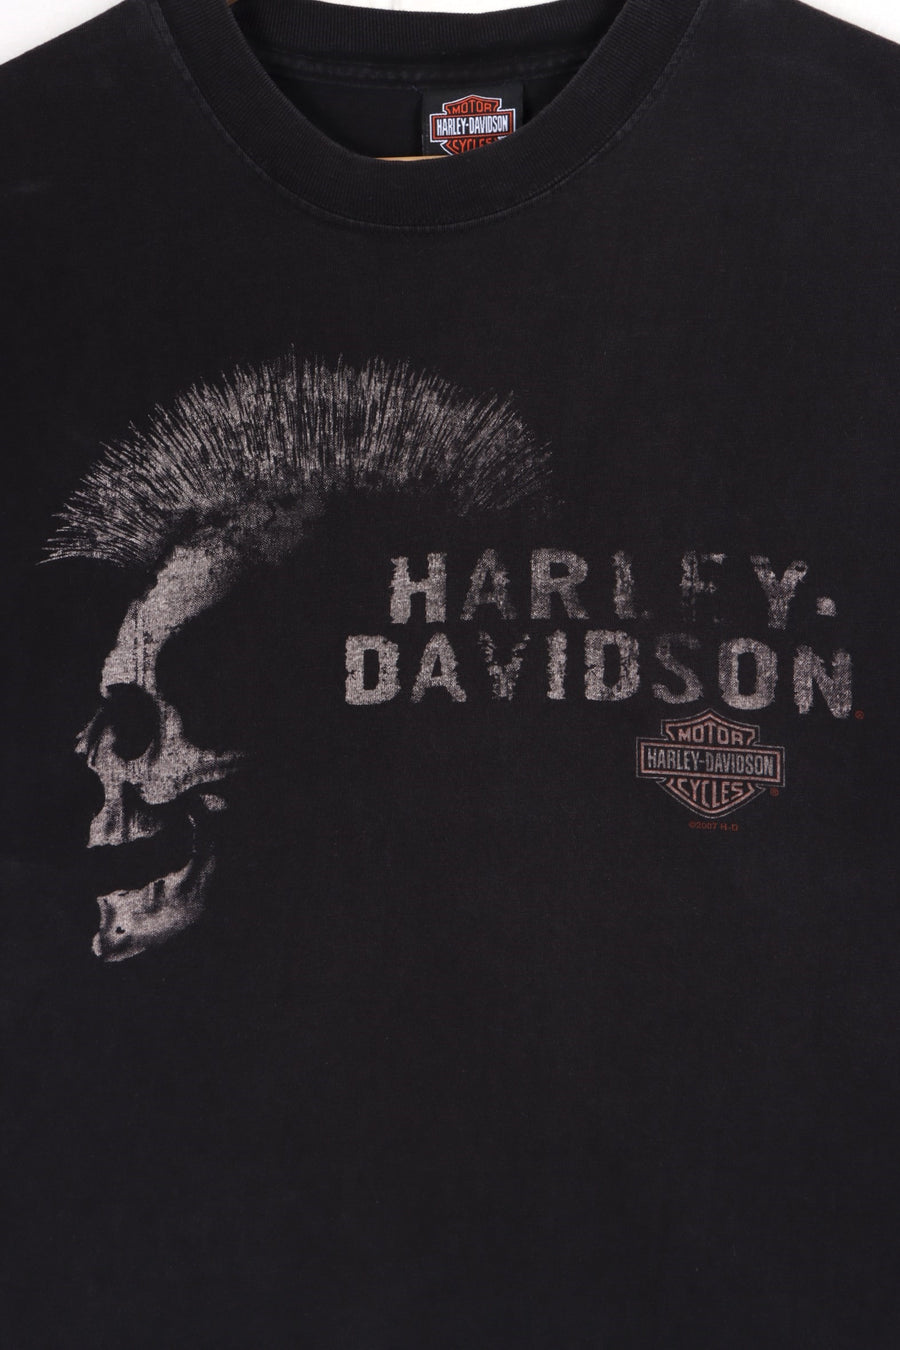 HARLEY DAVIDSON Surf City Front Back T-Shirt USA Made (L)